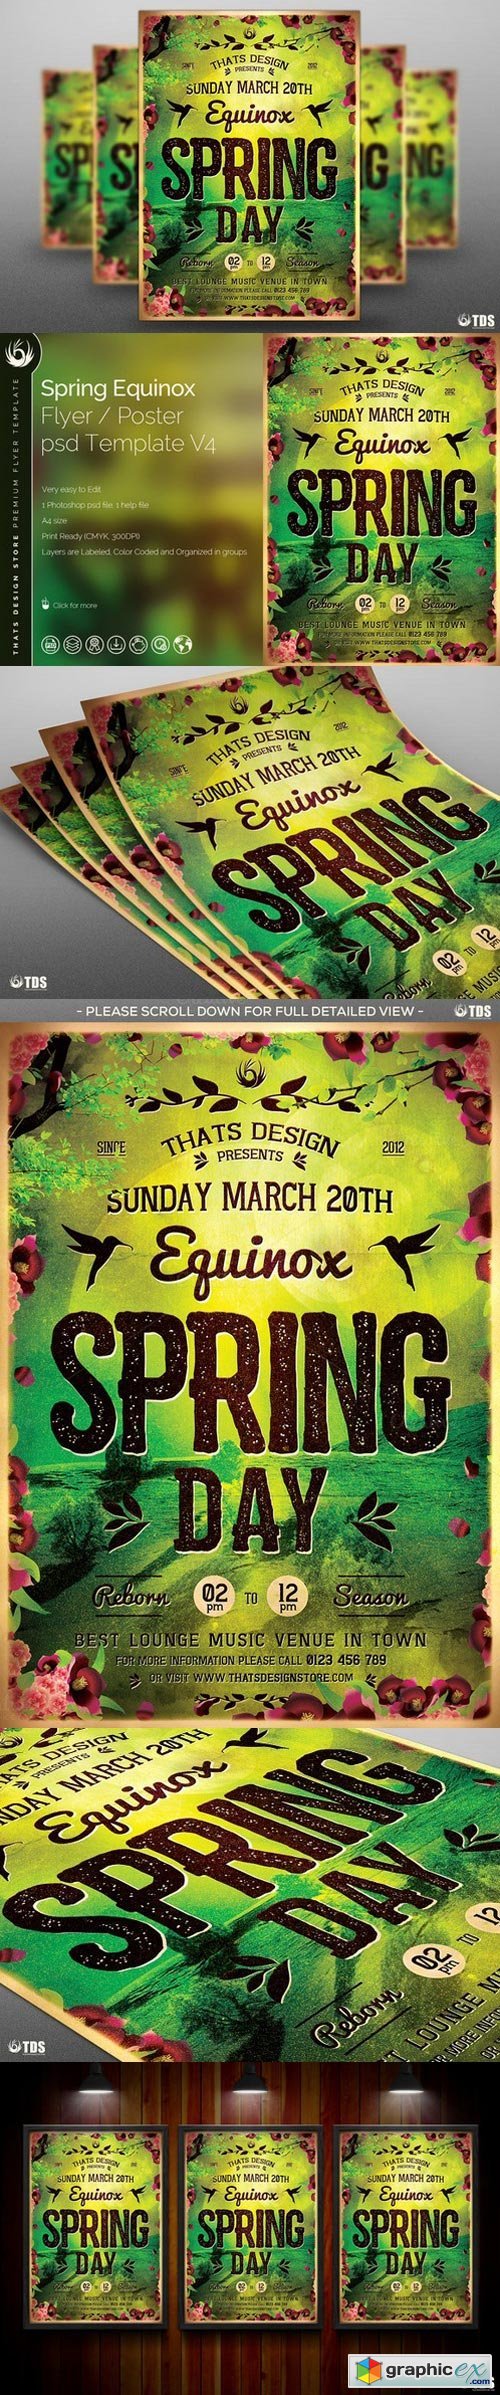 Spring Equinox Flyer Template V4